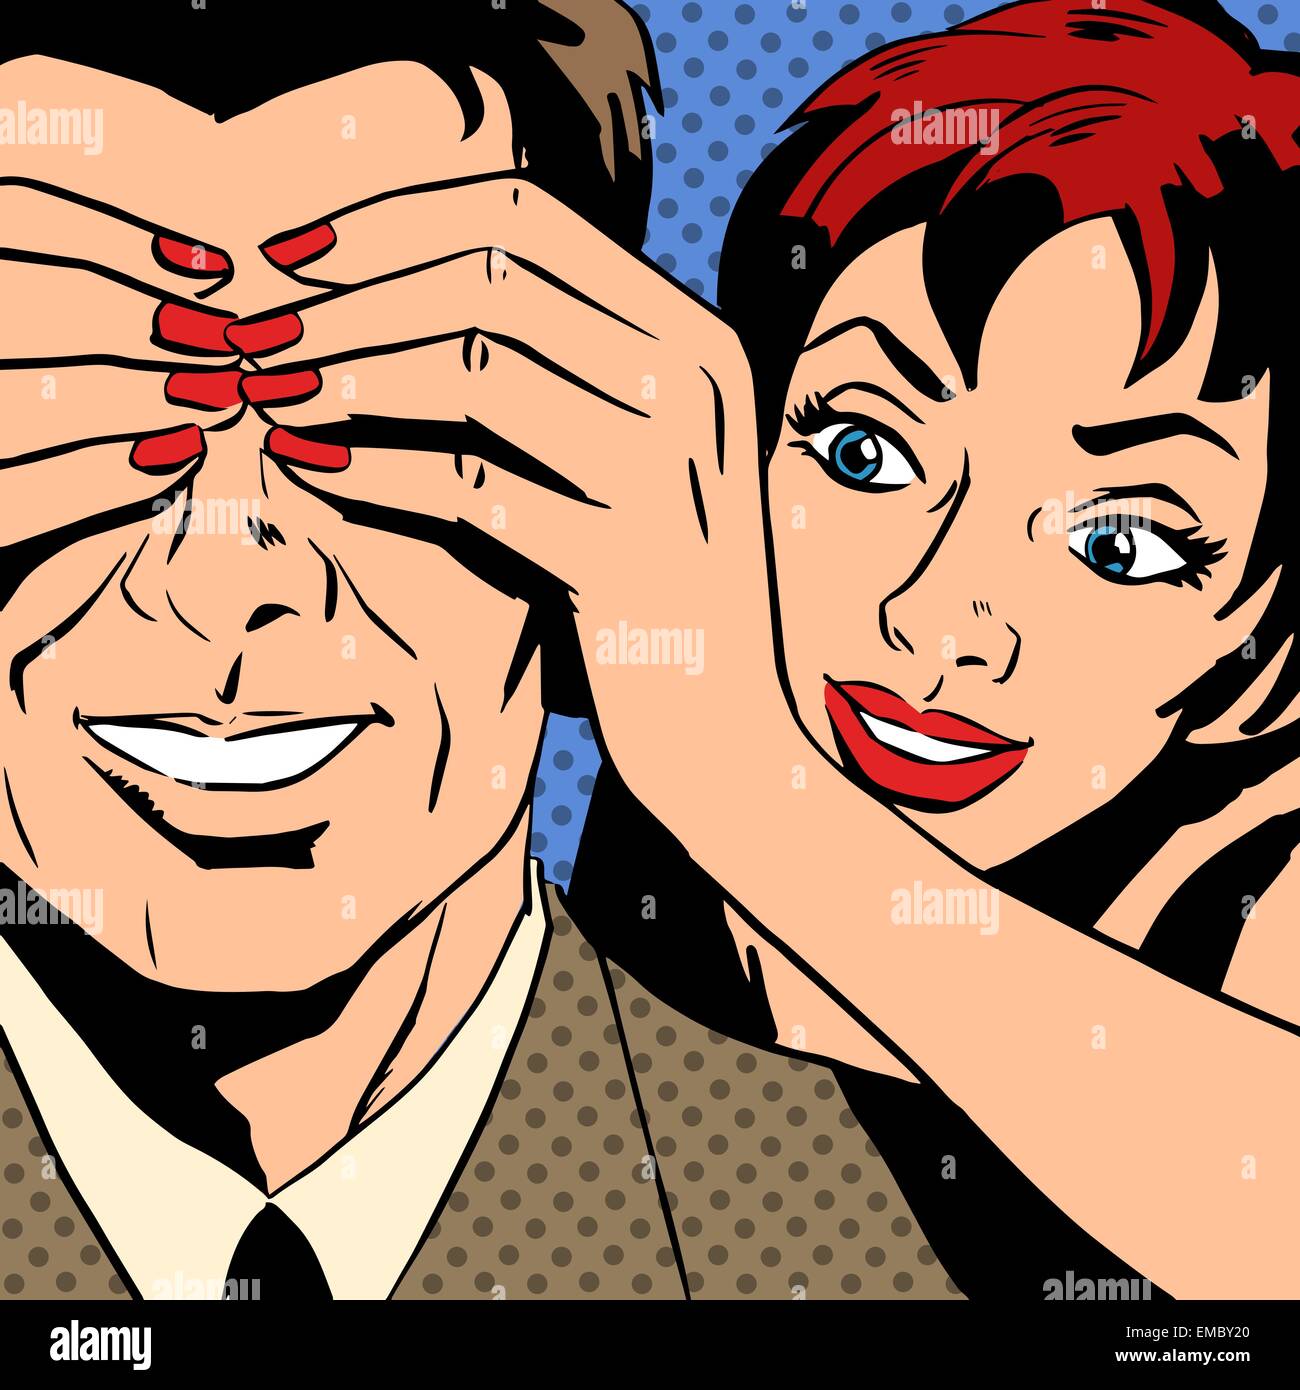 Flirt donna che è chiuso l'uomo occhi fumetti in stile retrò pop art. Il tema dell'amore, le relazioni e la comunicazione. Imitazione Illustrazione Vettoriale